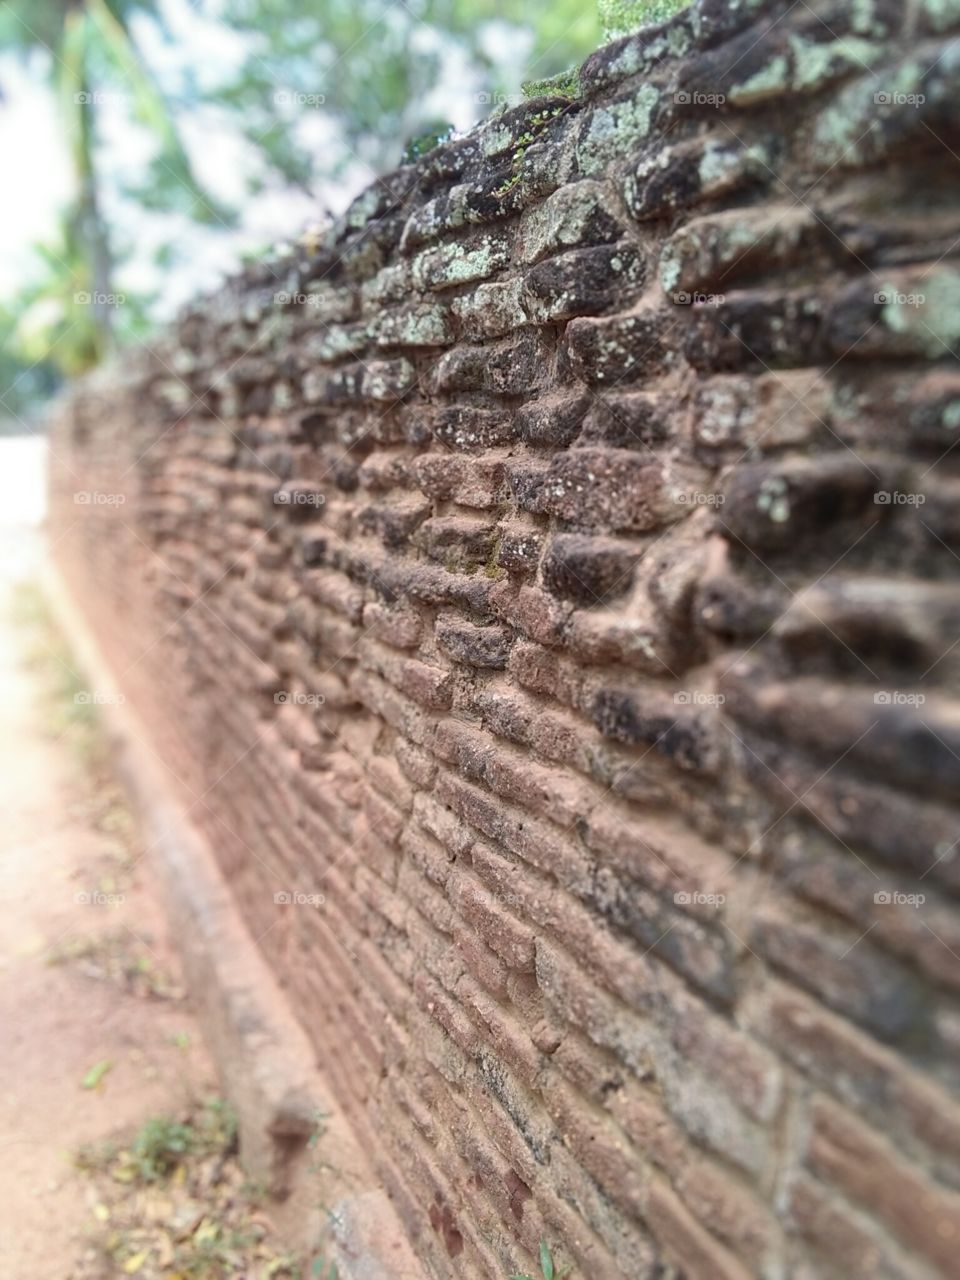 Ancient wall